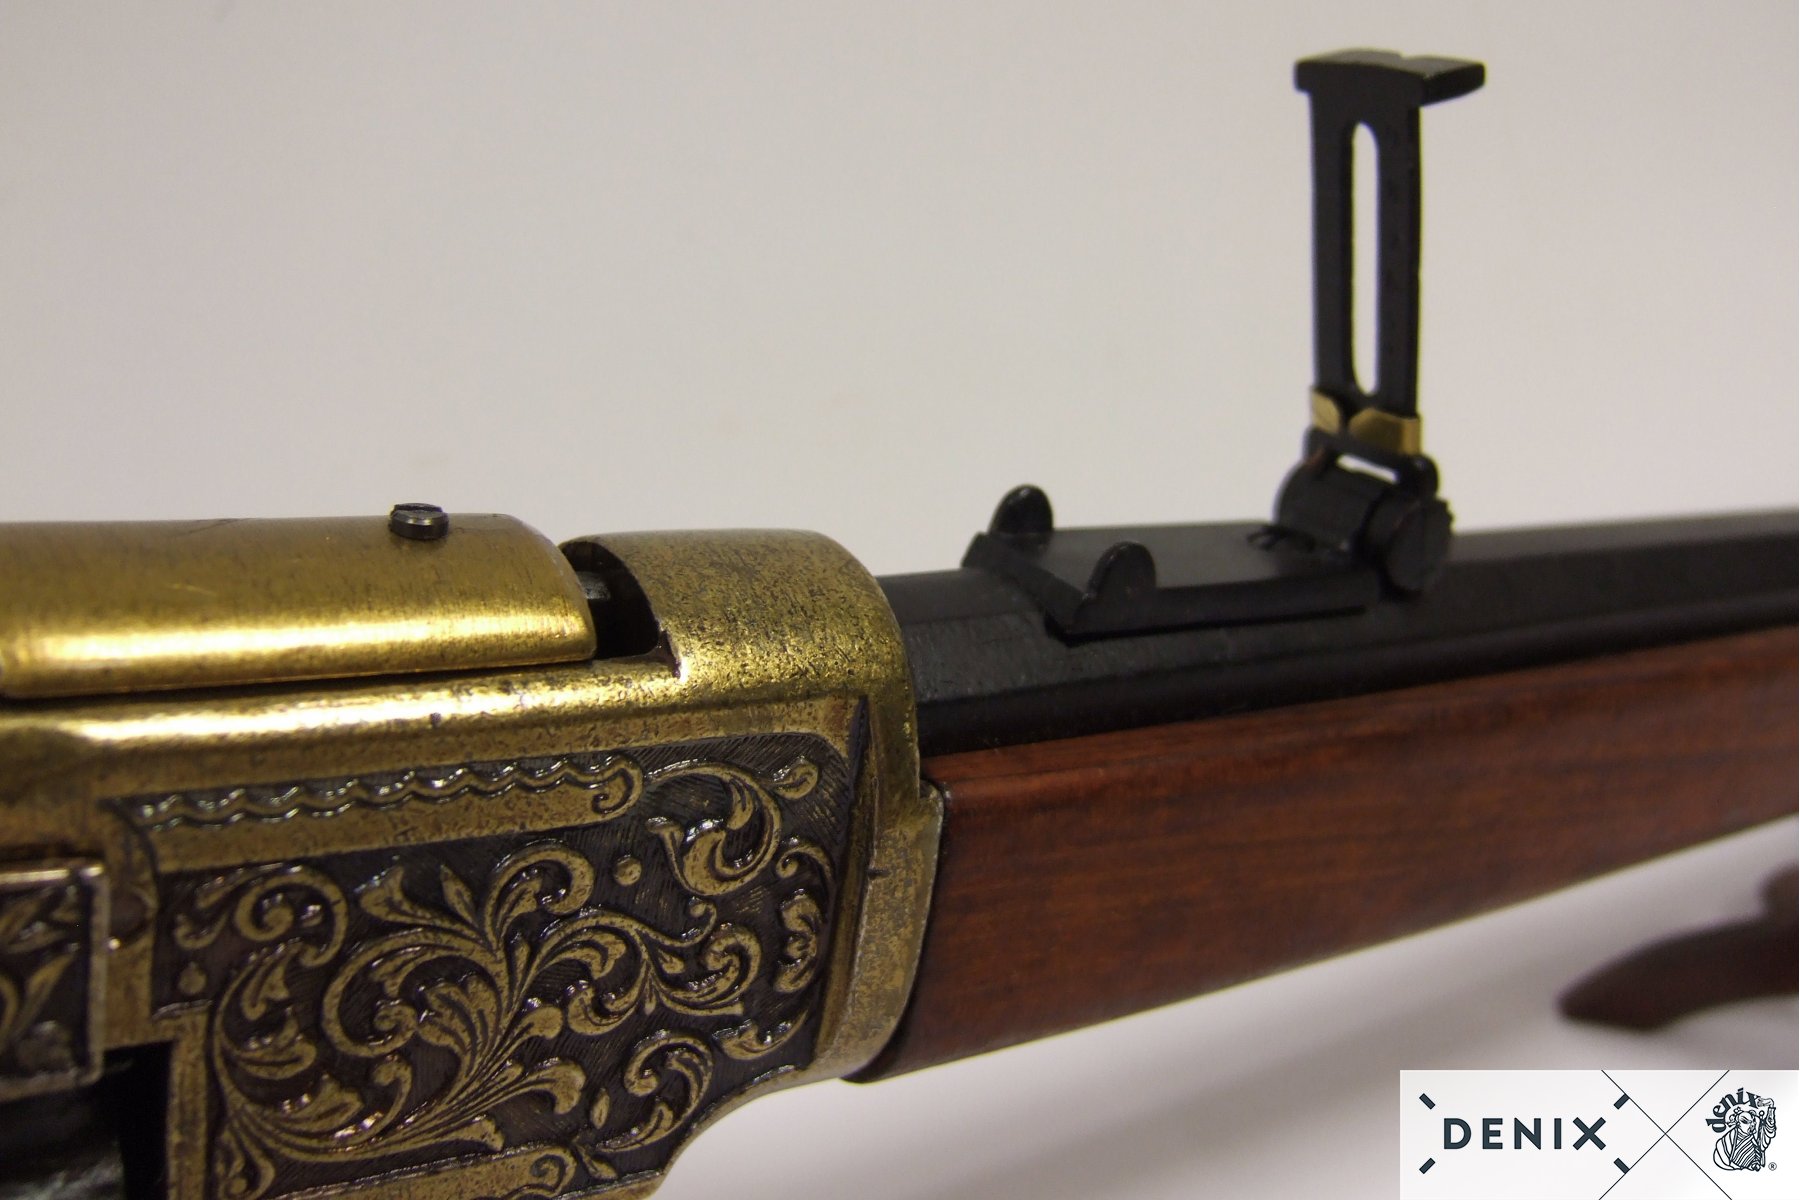 Макет винтовка Винчестер, сталь (США, 1873 г.)